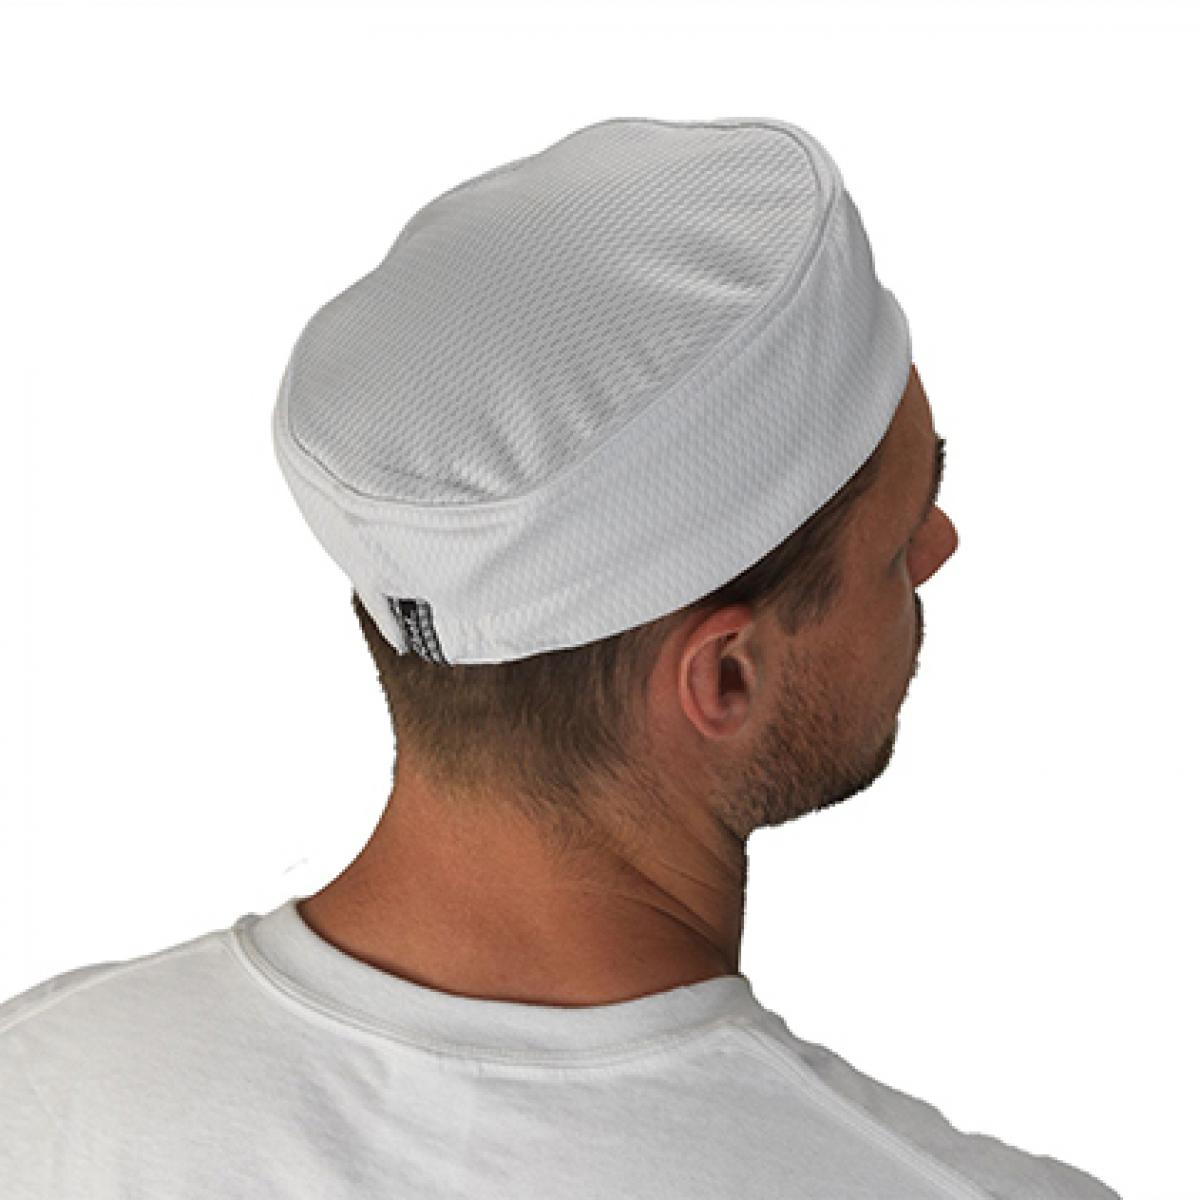 Hersteller: Le Chef Herstellernummer: DF14 Artikelbezeichnung: Kochmütze Staycool Skull Cap Farbe: White